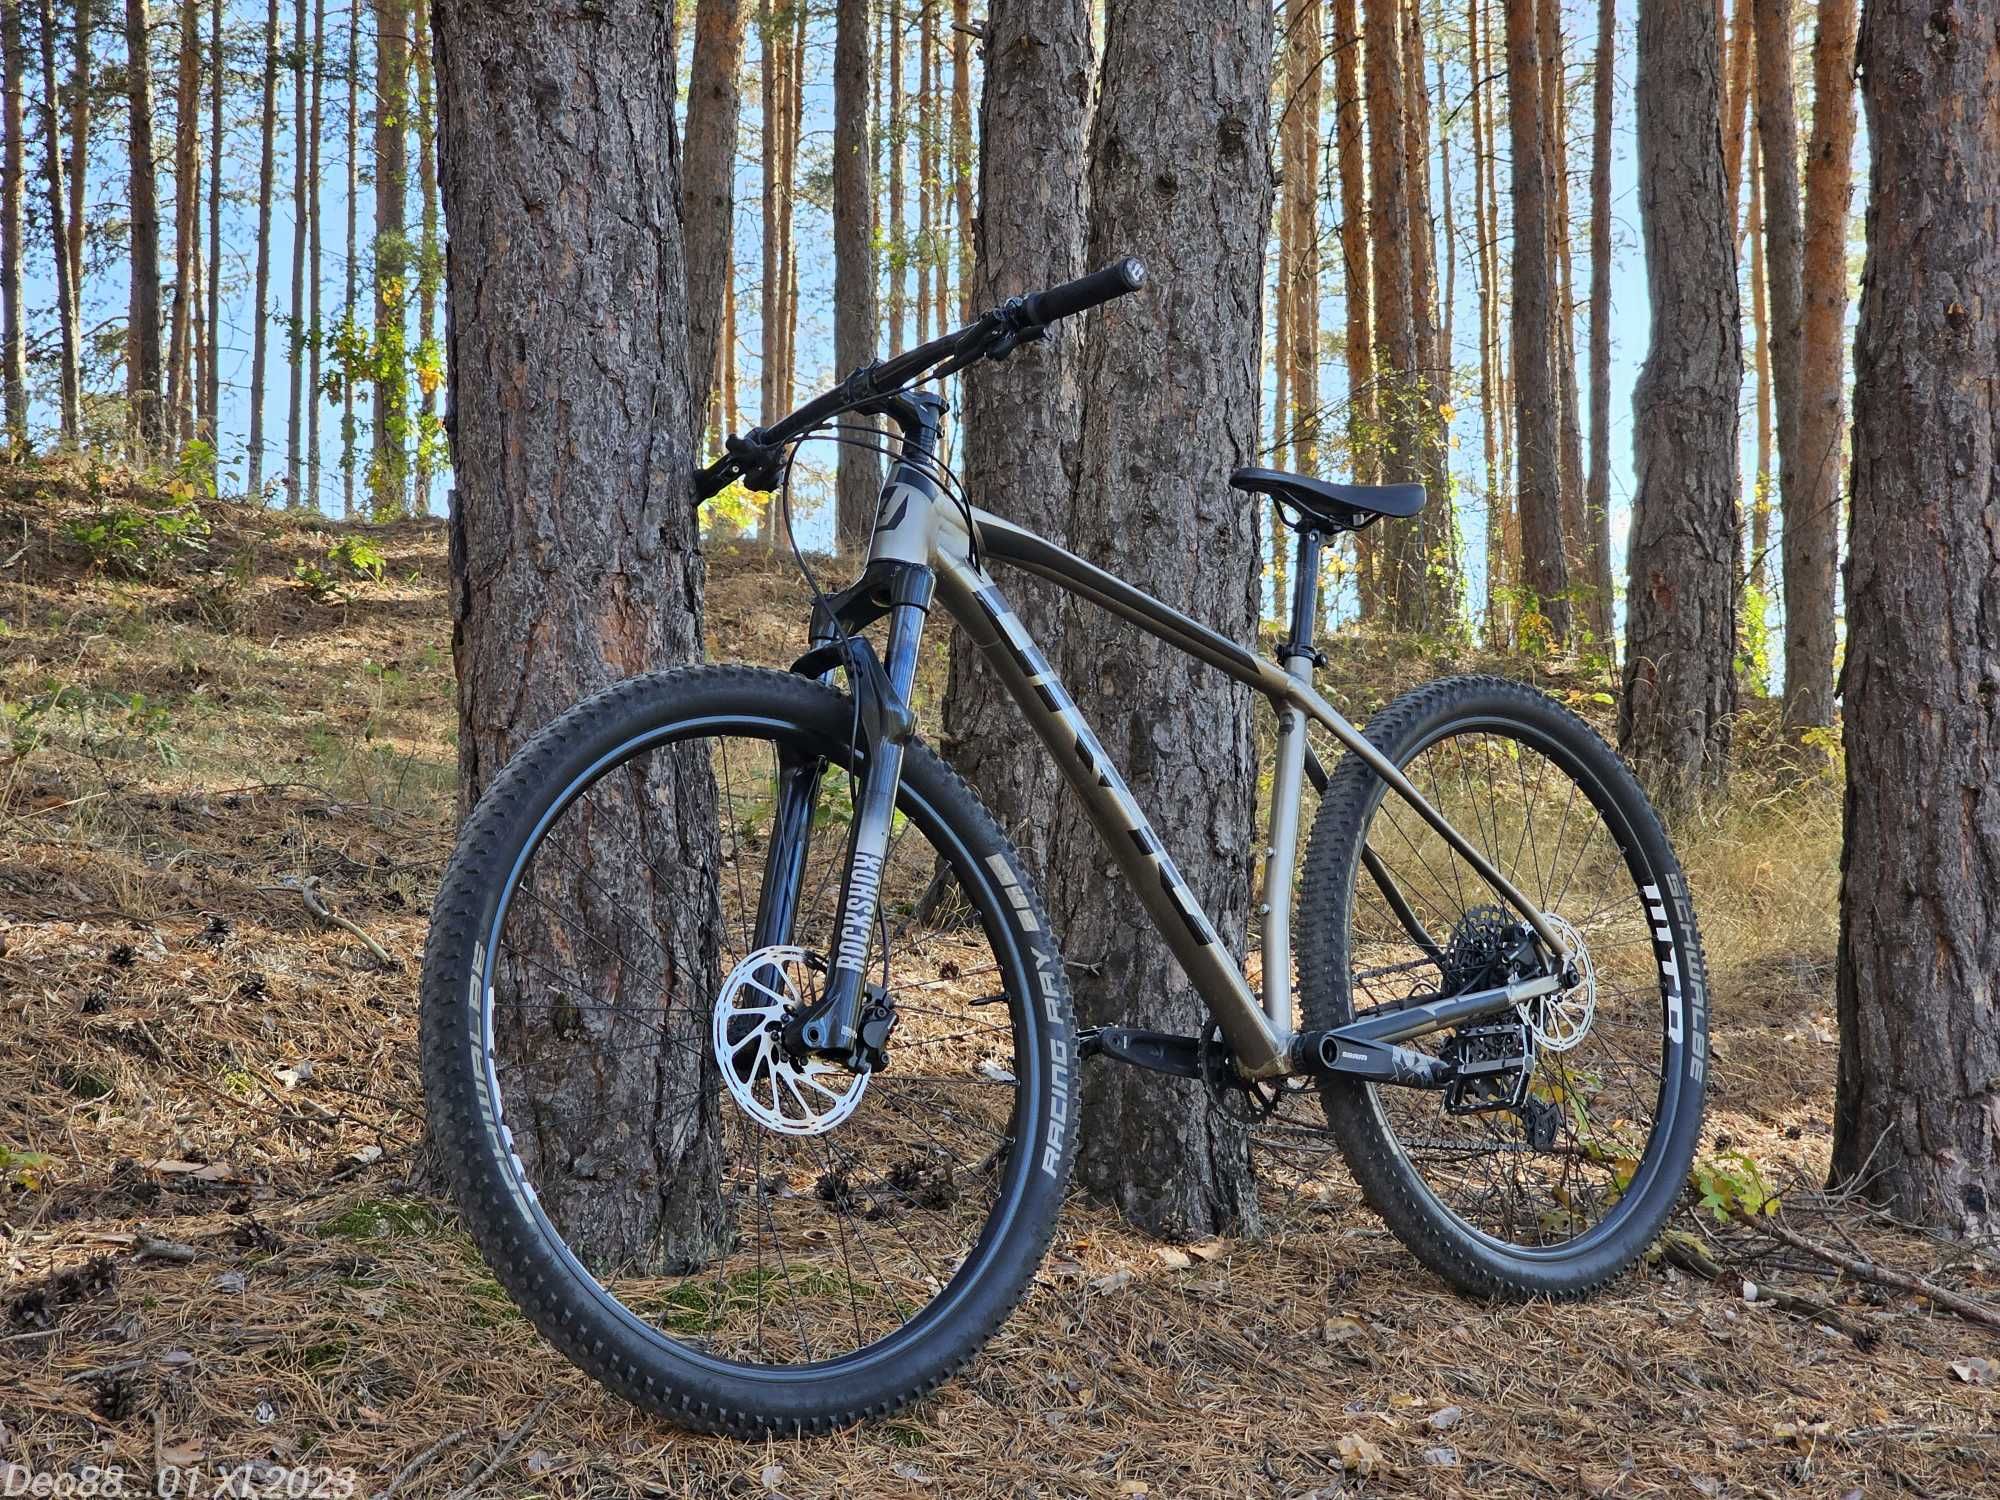 Планински велосипед Drag Trigger 9.0 , 29" твърдак , L , Tubeless